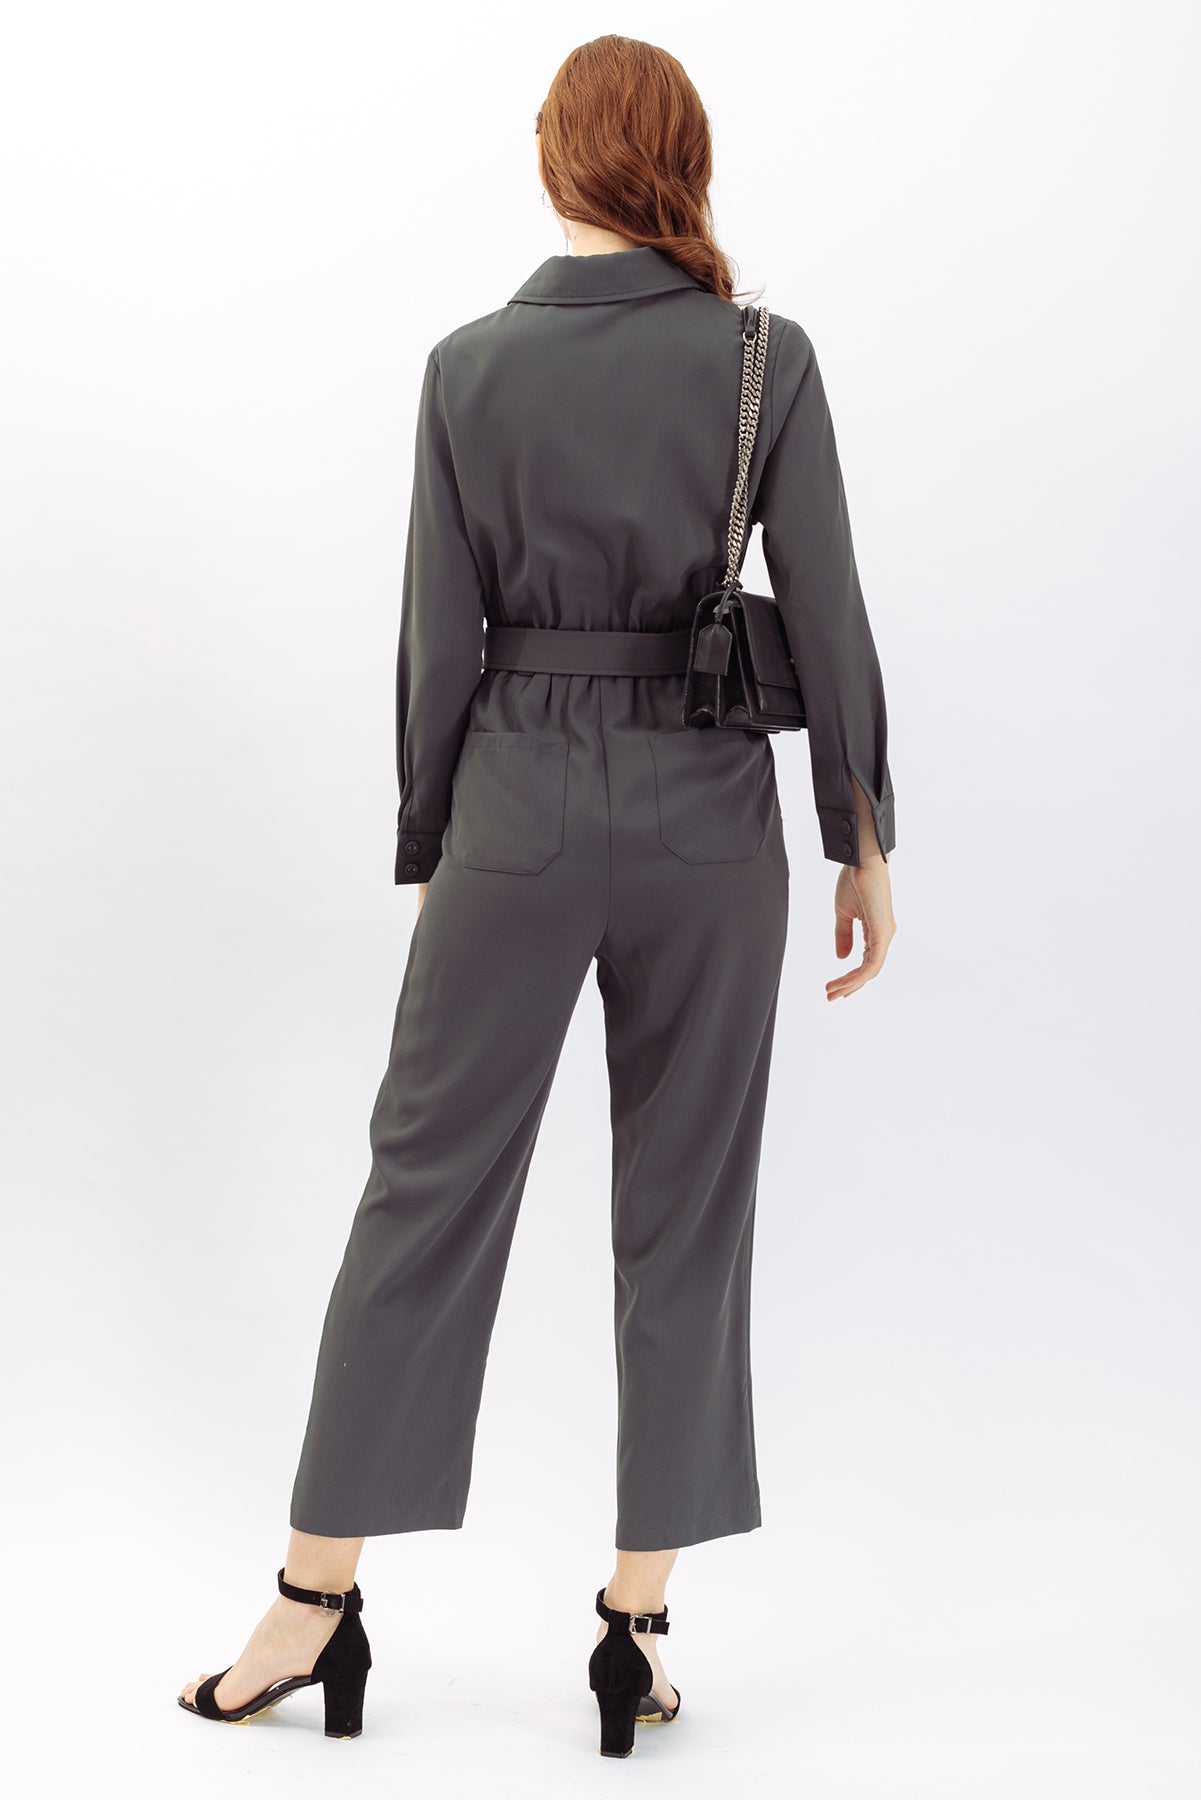 Blanche Front Flap Zipper Jumpsuit – 26 INCHI